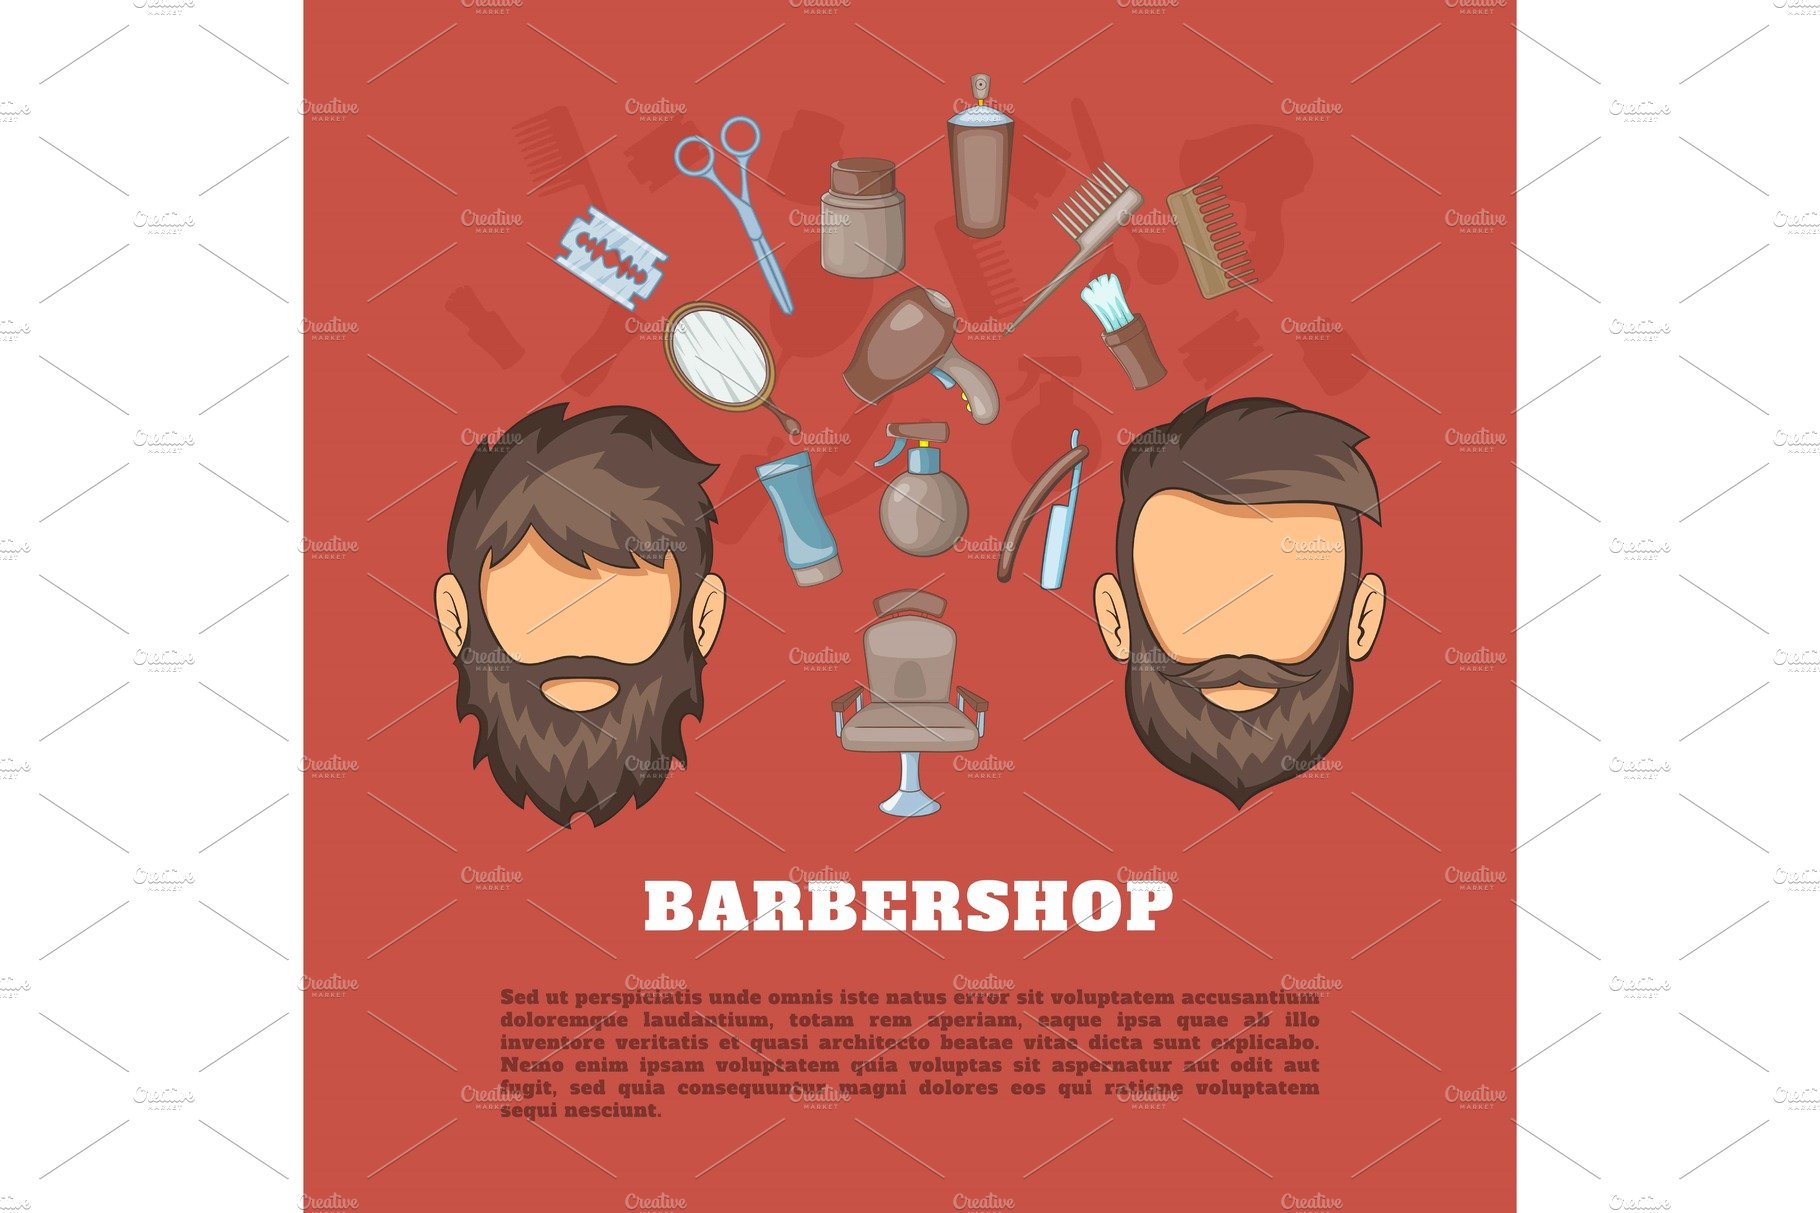 Barbershop tools concept, cartoon cover image.